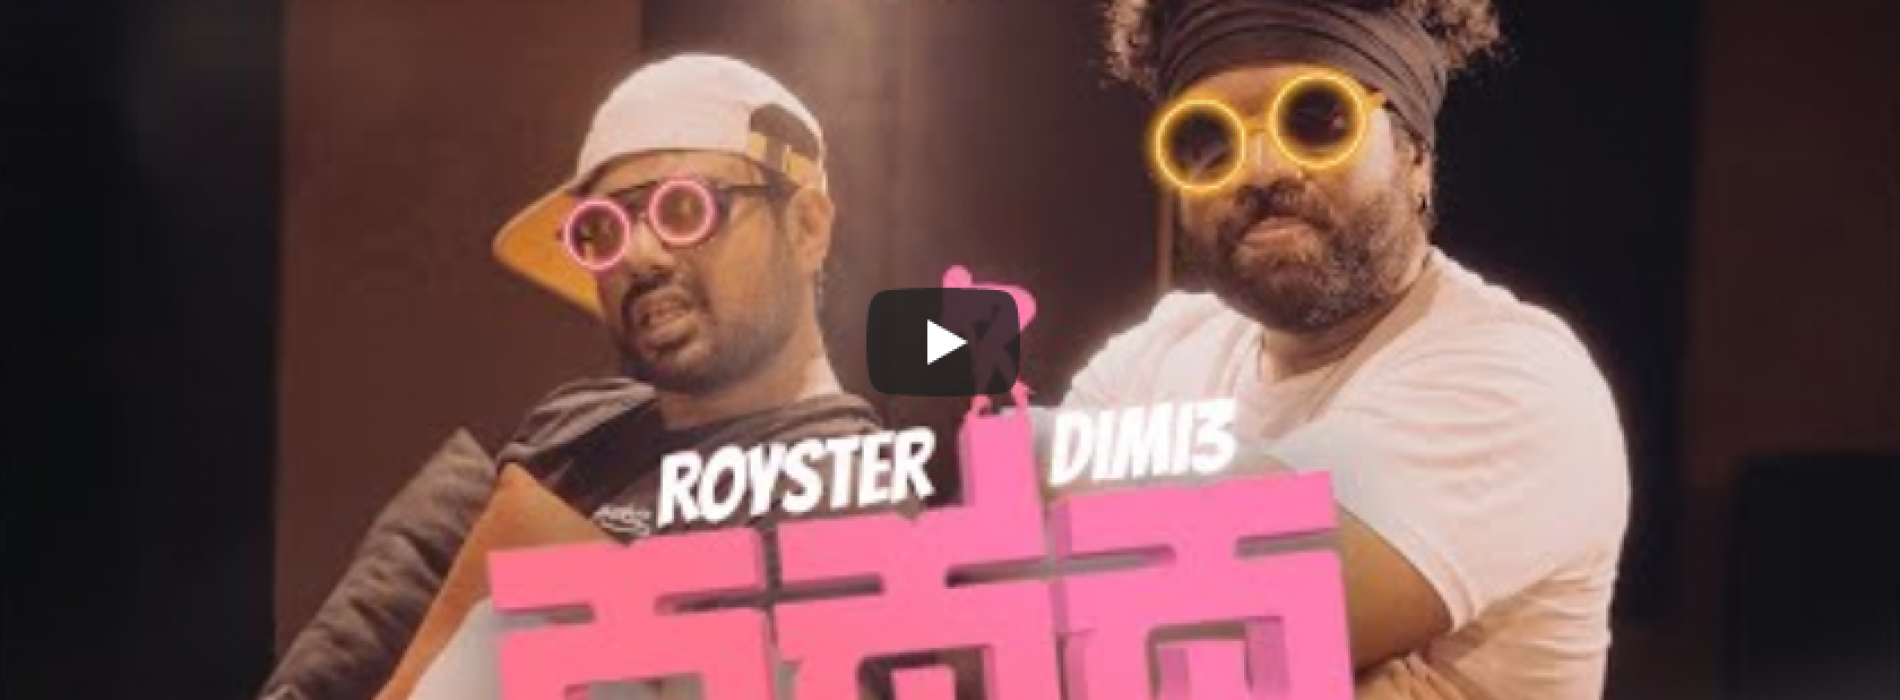 New Music : Passa පස්ස | Ravi Royster X Dimi3